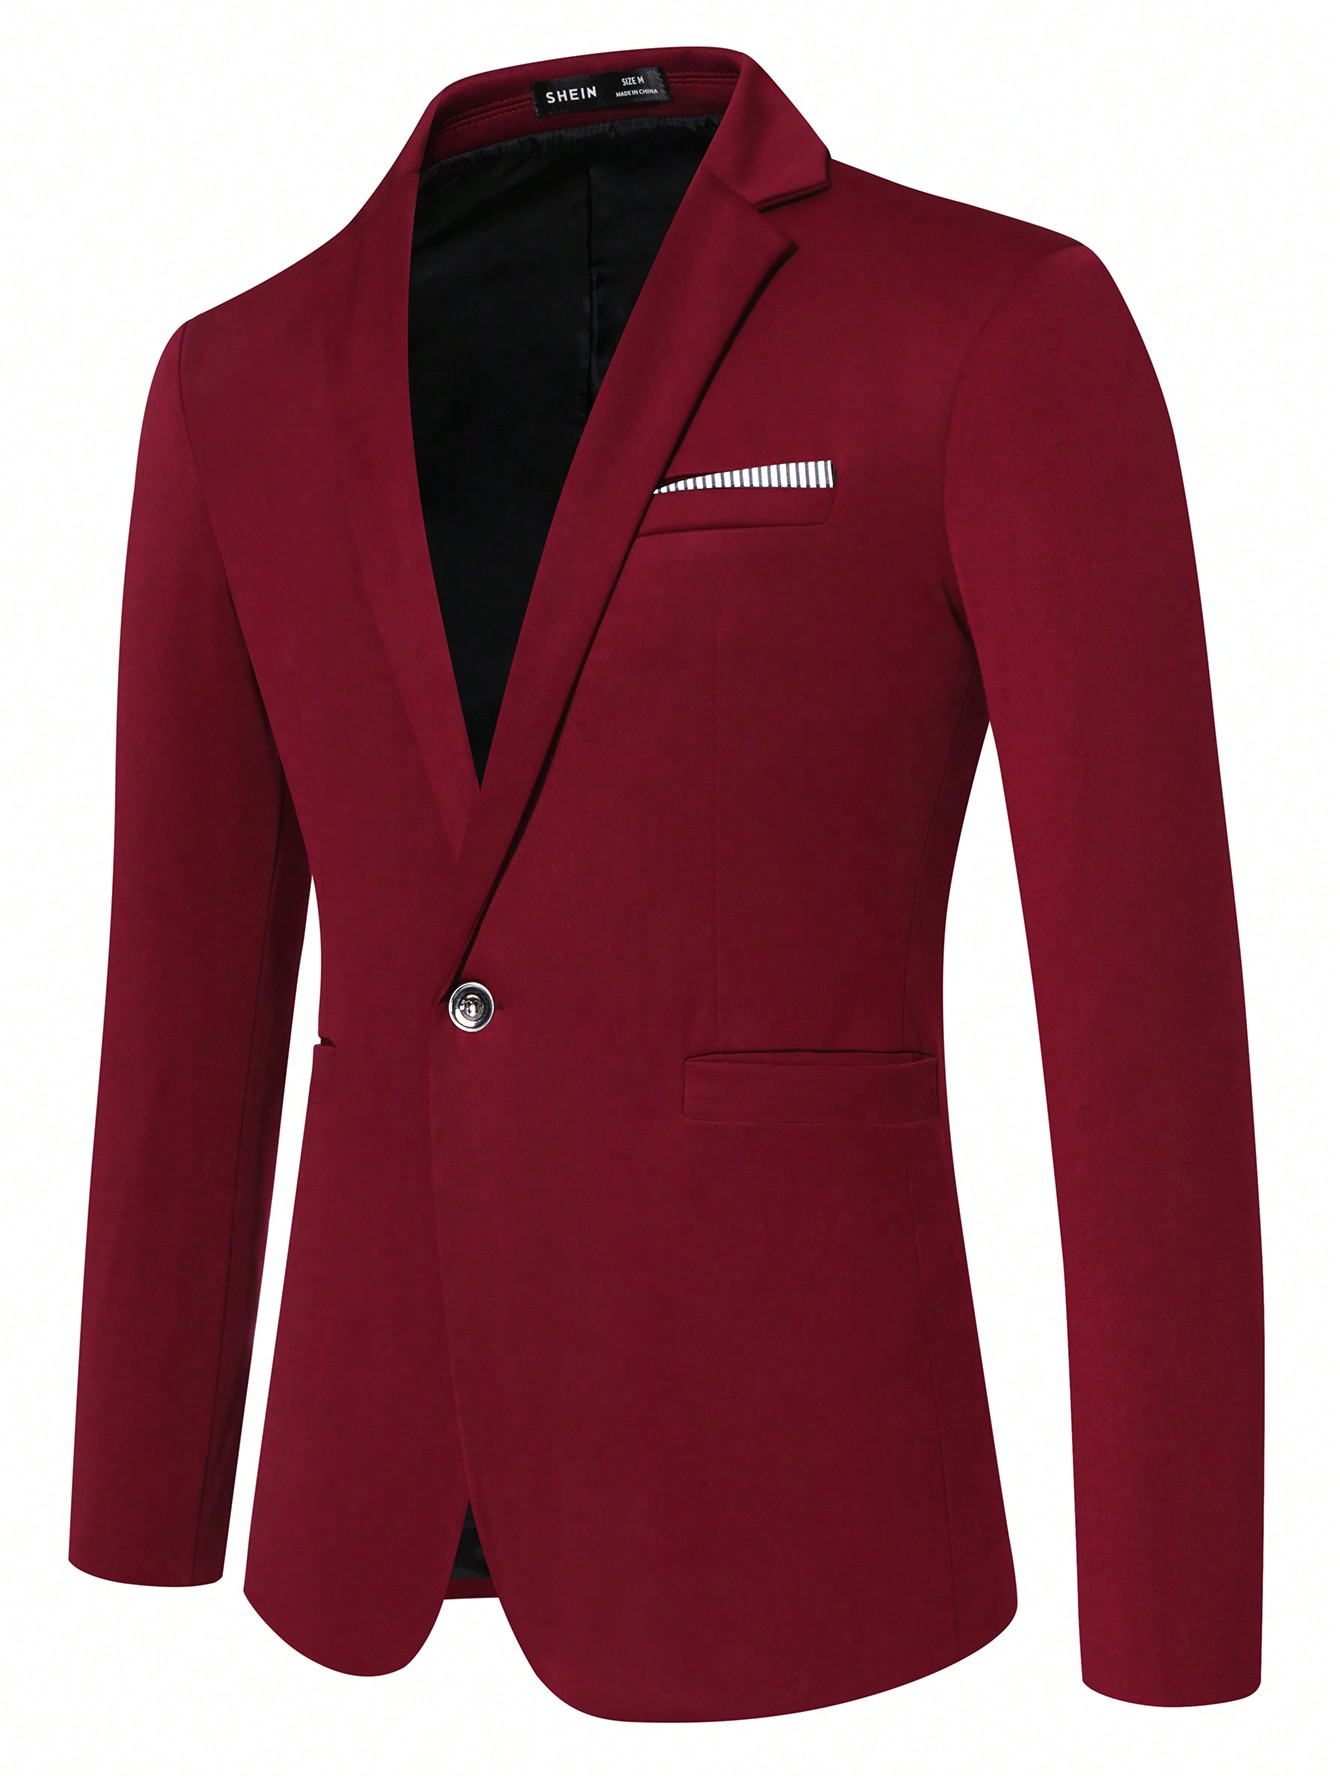 Мужской пиджак с длинными рукавами и зубчатыми лацканами Manfinity Mode, красный мужской однотонный костюм с воротником стойкой manfinity mode черный